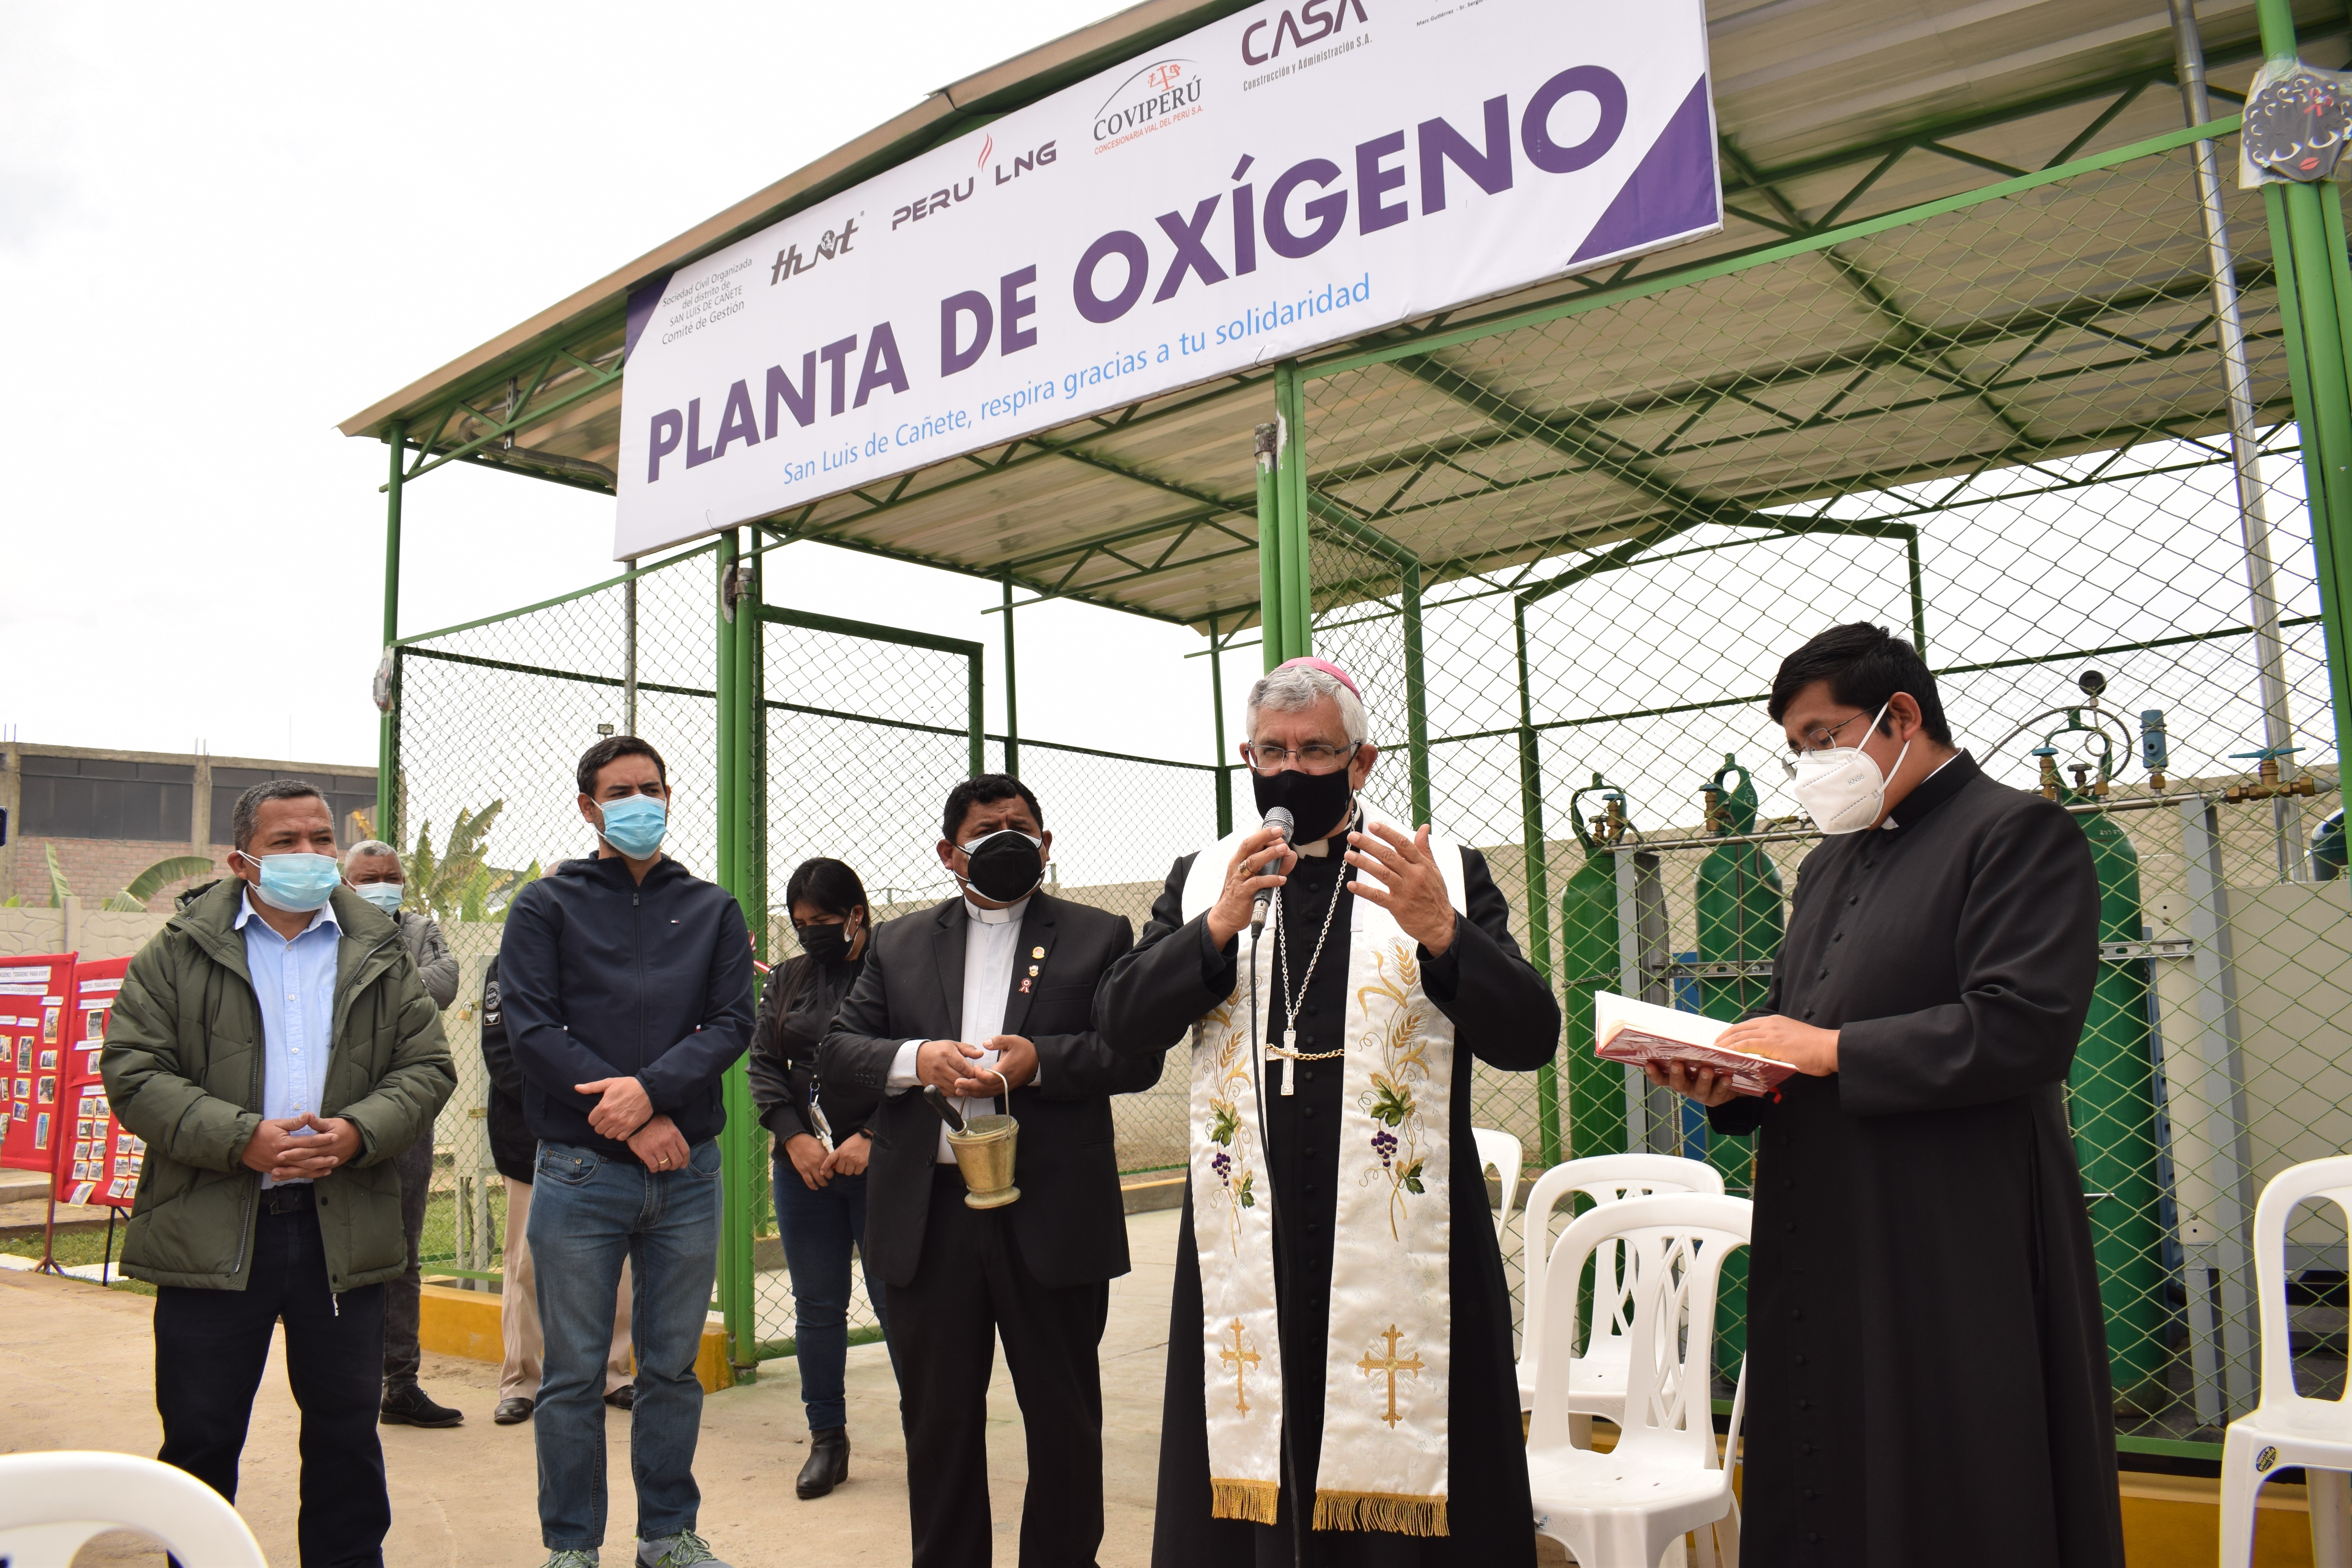 Hunt Oil, PERU LNG y la Sociedad Civil suman esfuerzos para adquirir una planta de oxígeno para Cañete